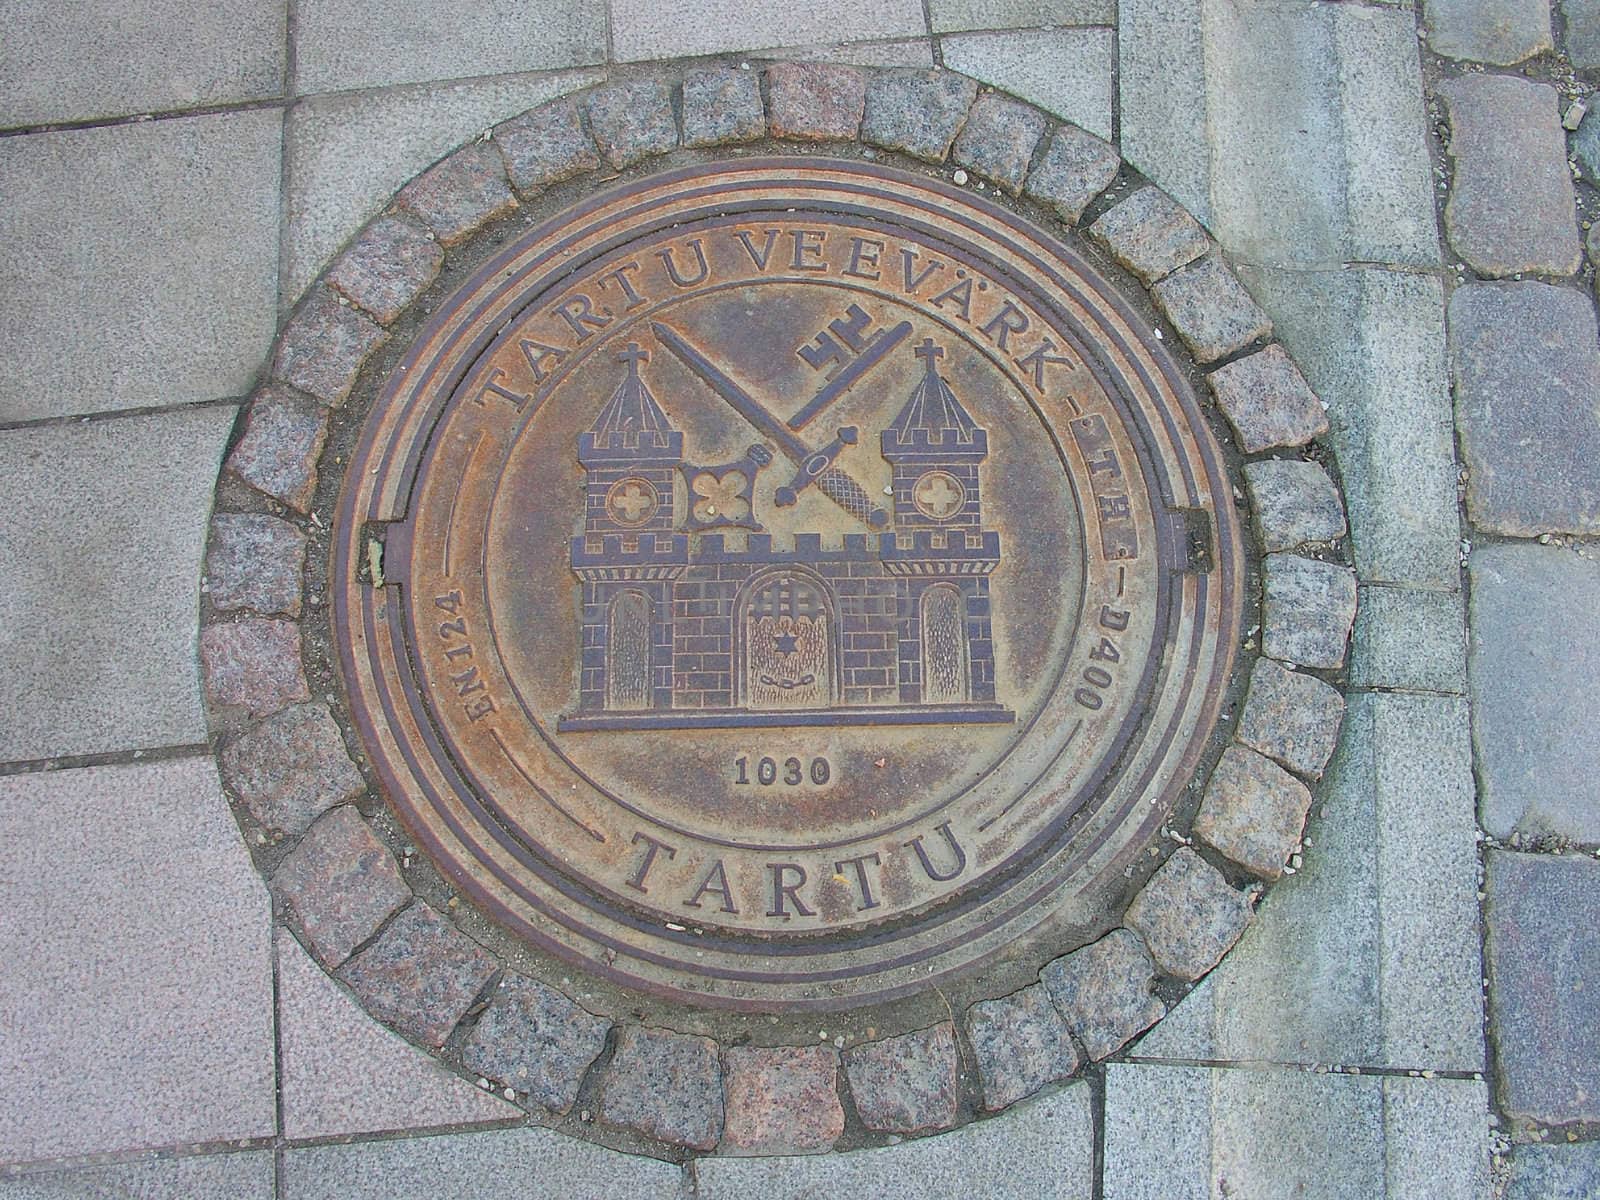 A manhole cover in Tartu